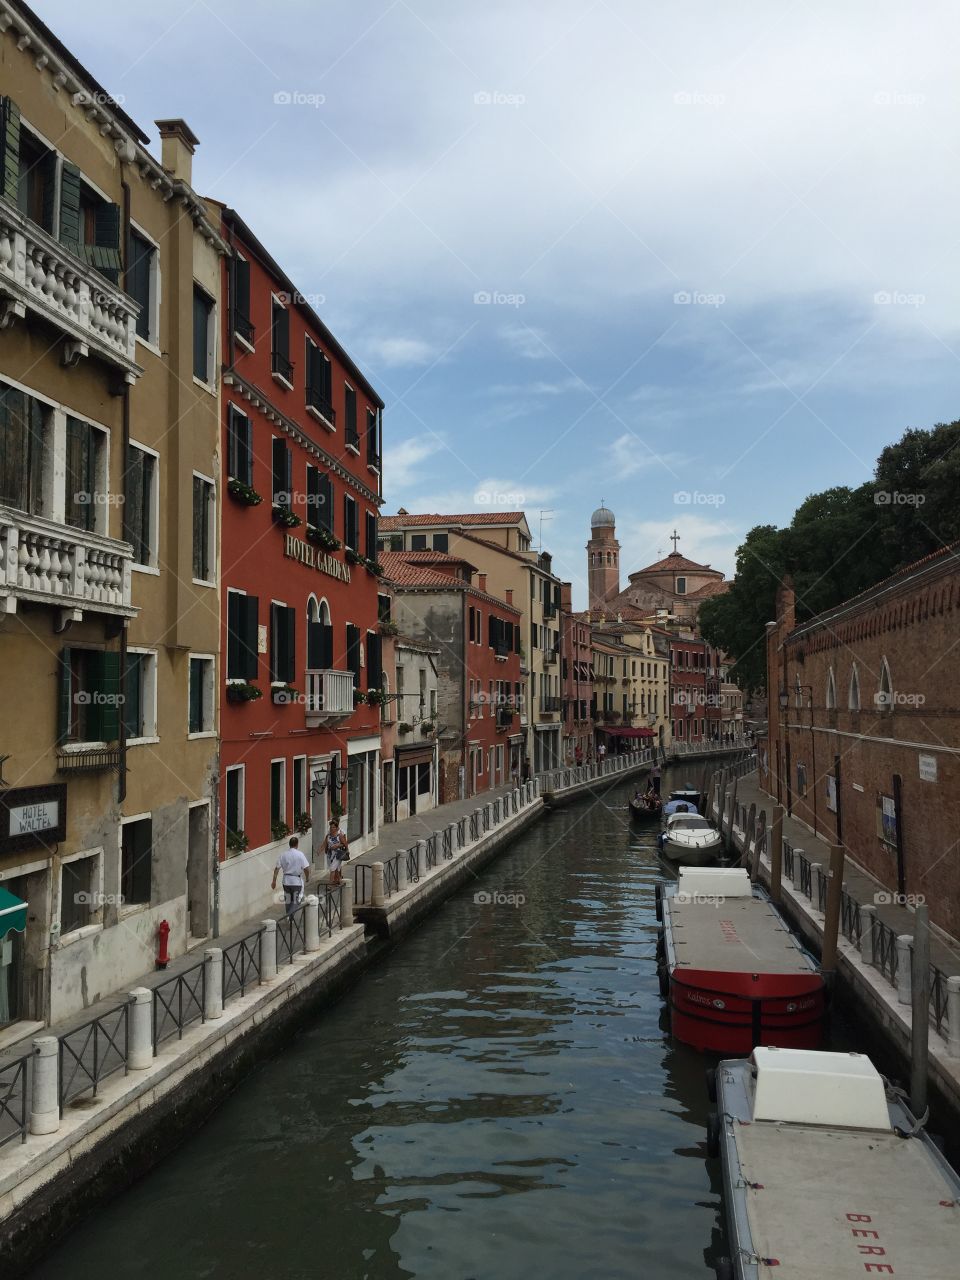 Aspect of Venice 